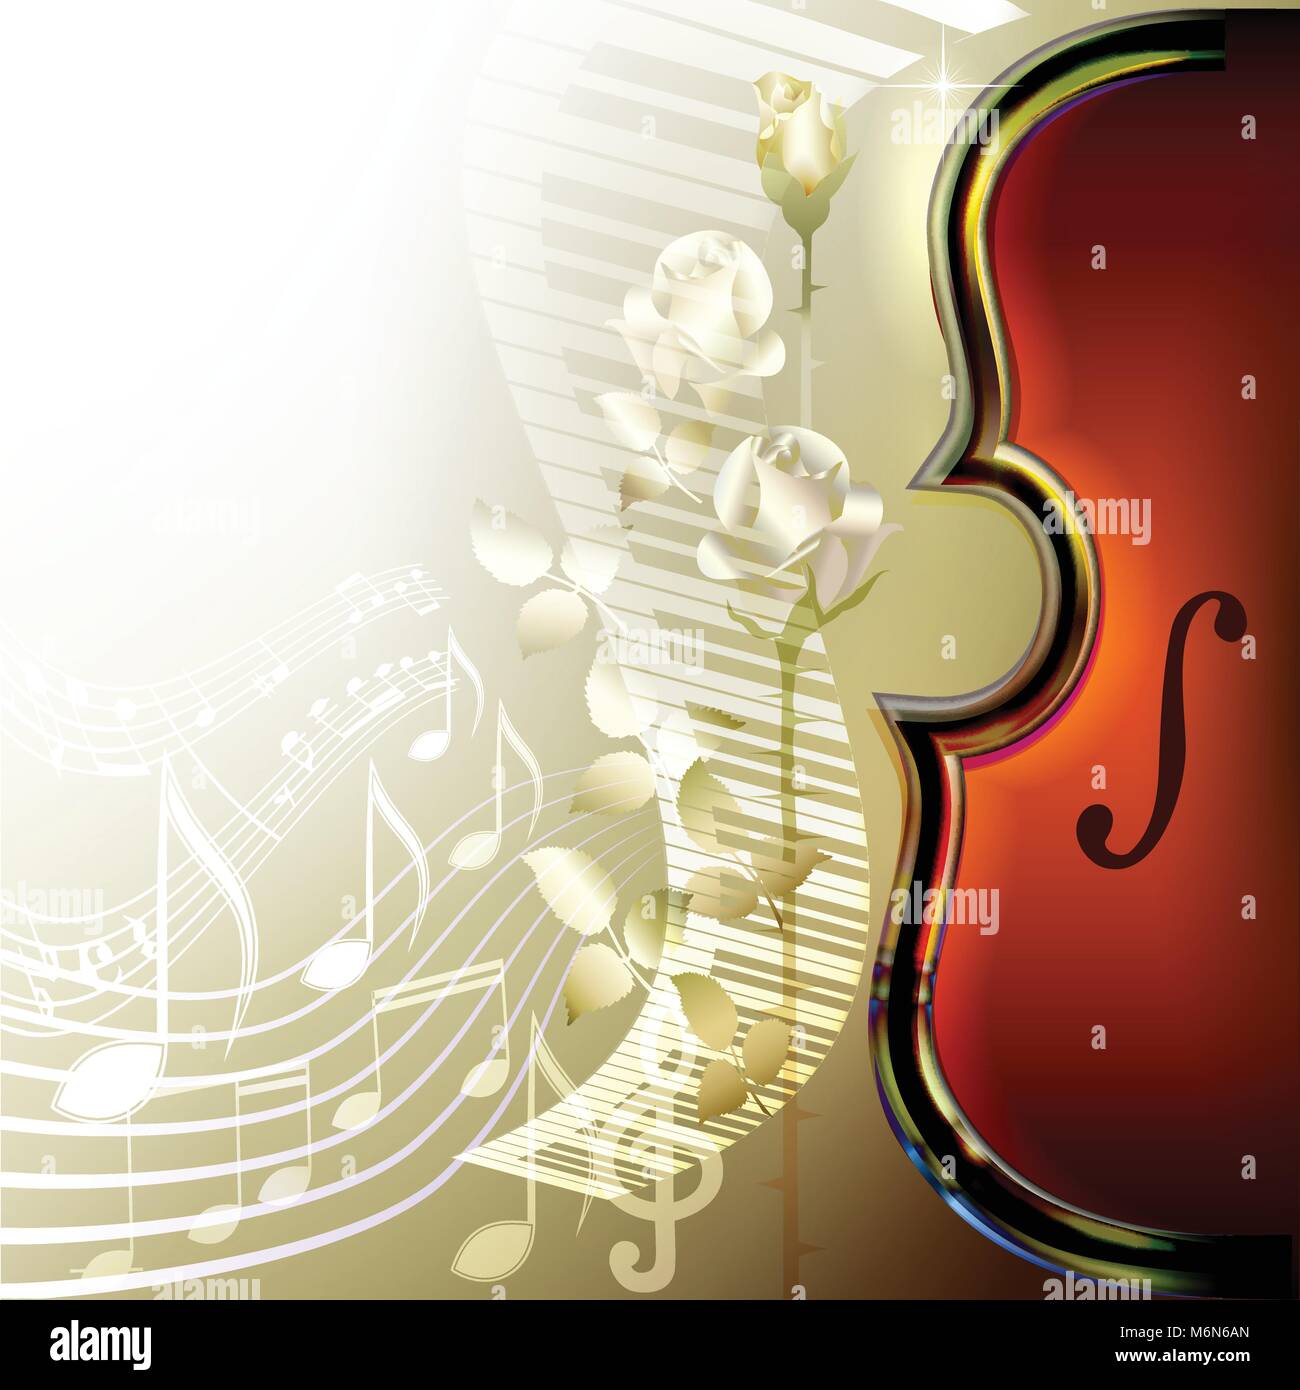 Arrière-plan de la musique classique avec violon, des roses blanches, des notes de musique et de piano Illustration de Vecteur